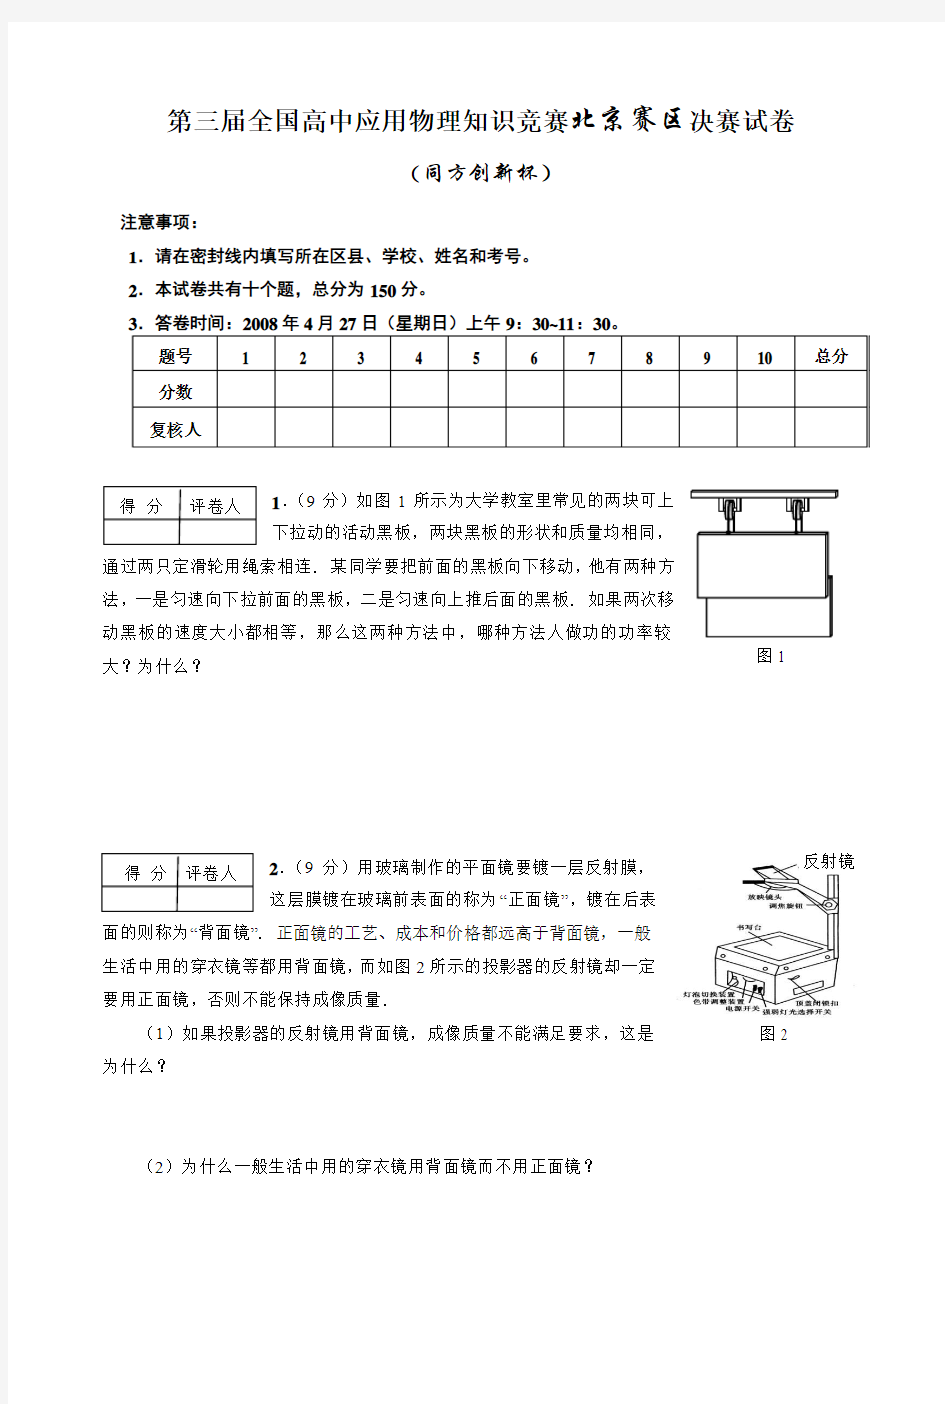 全国高中应用物理知识竞赛北京赛区决赛试卷(印刷版)